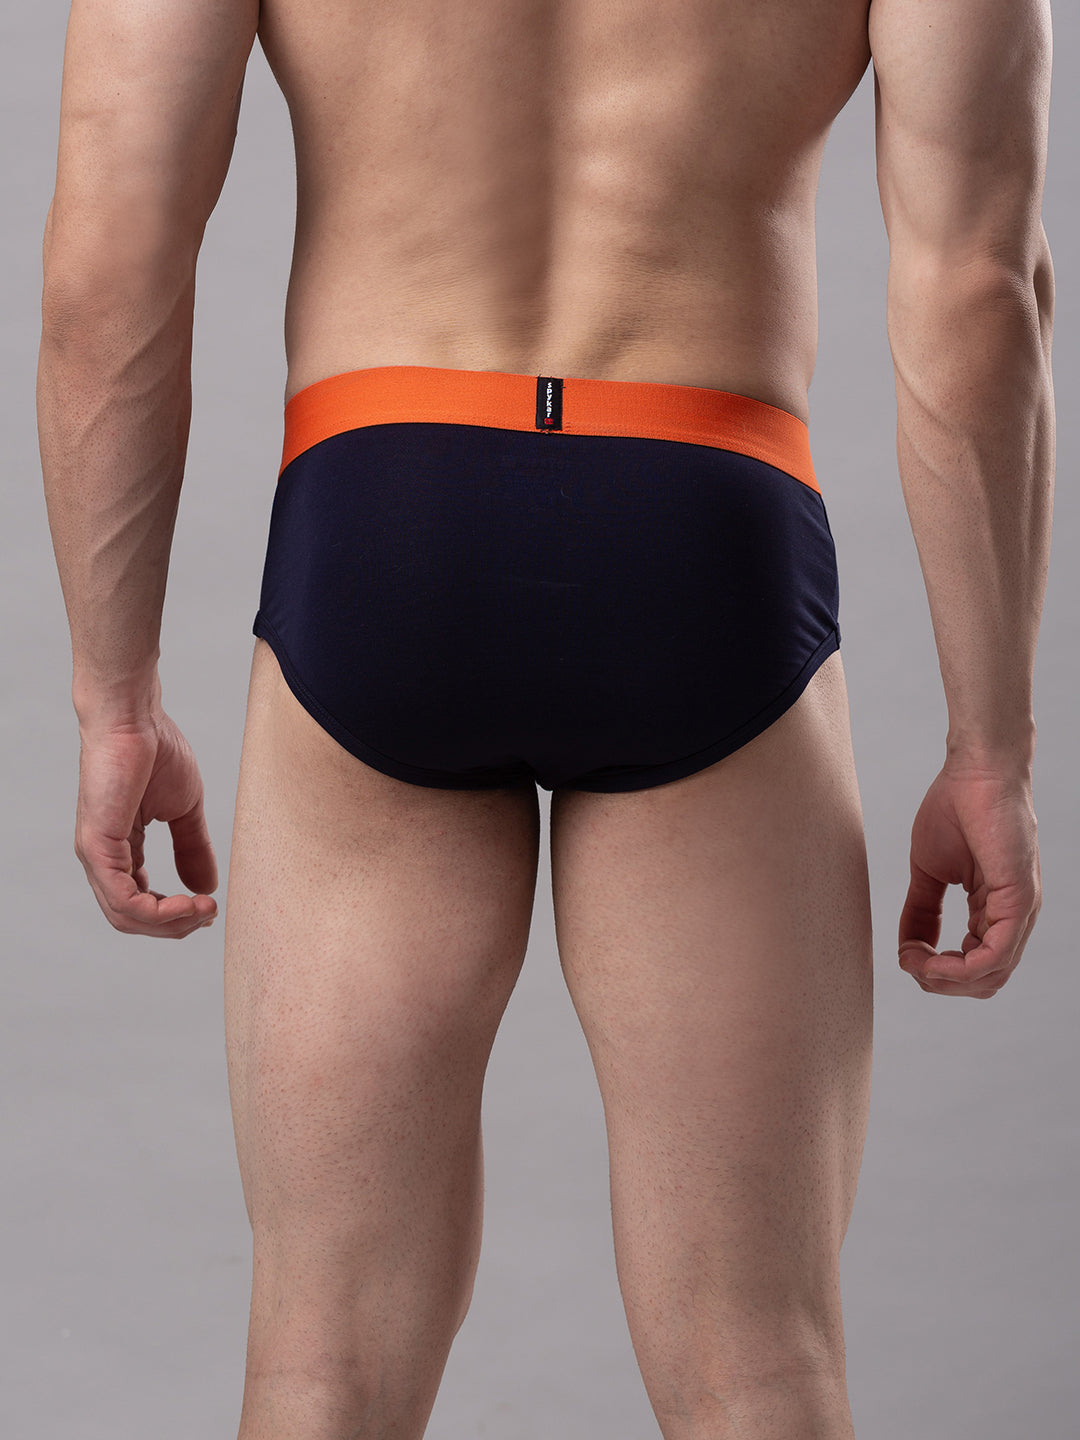 Men Premium Cotton Blend Navy-Orange Brief - (Pack of 2)- UnderJeans by Spykar